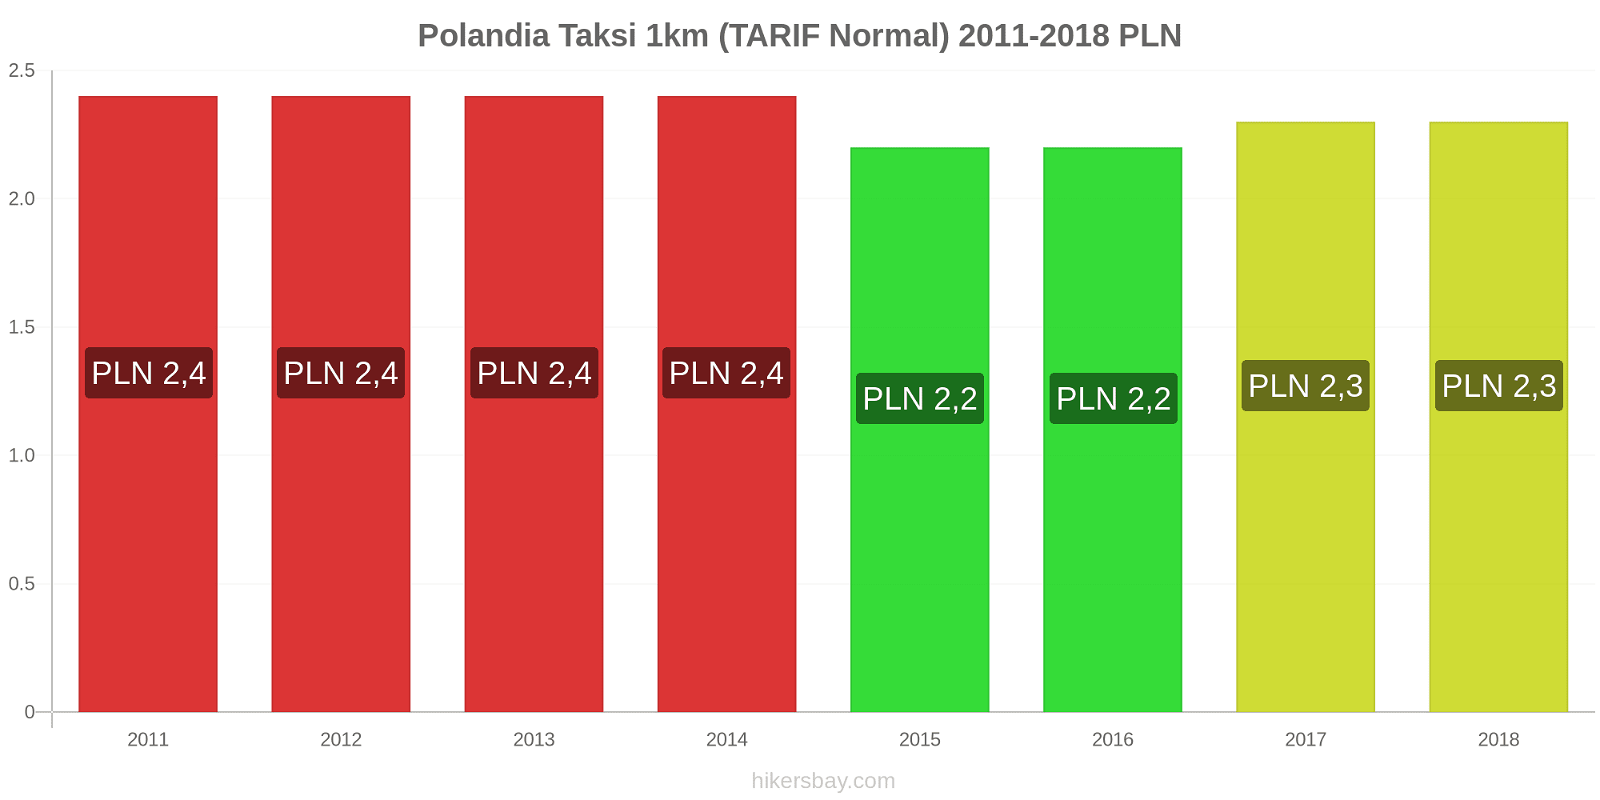 Polandia perubahan harga Taksi 1km (Tarif Normal) hikersbay.com